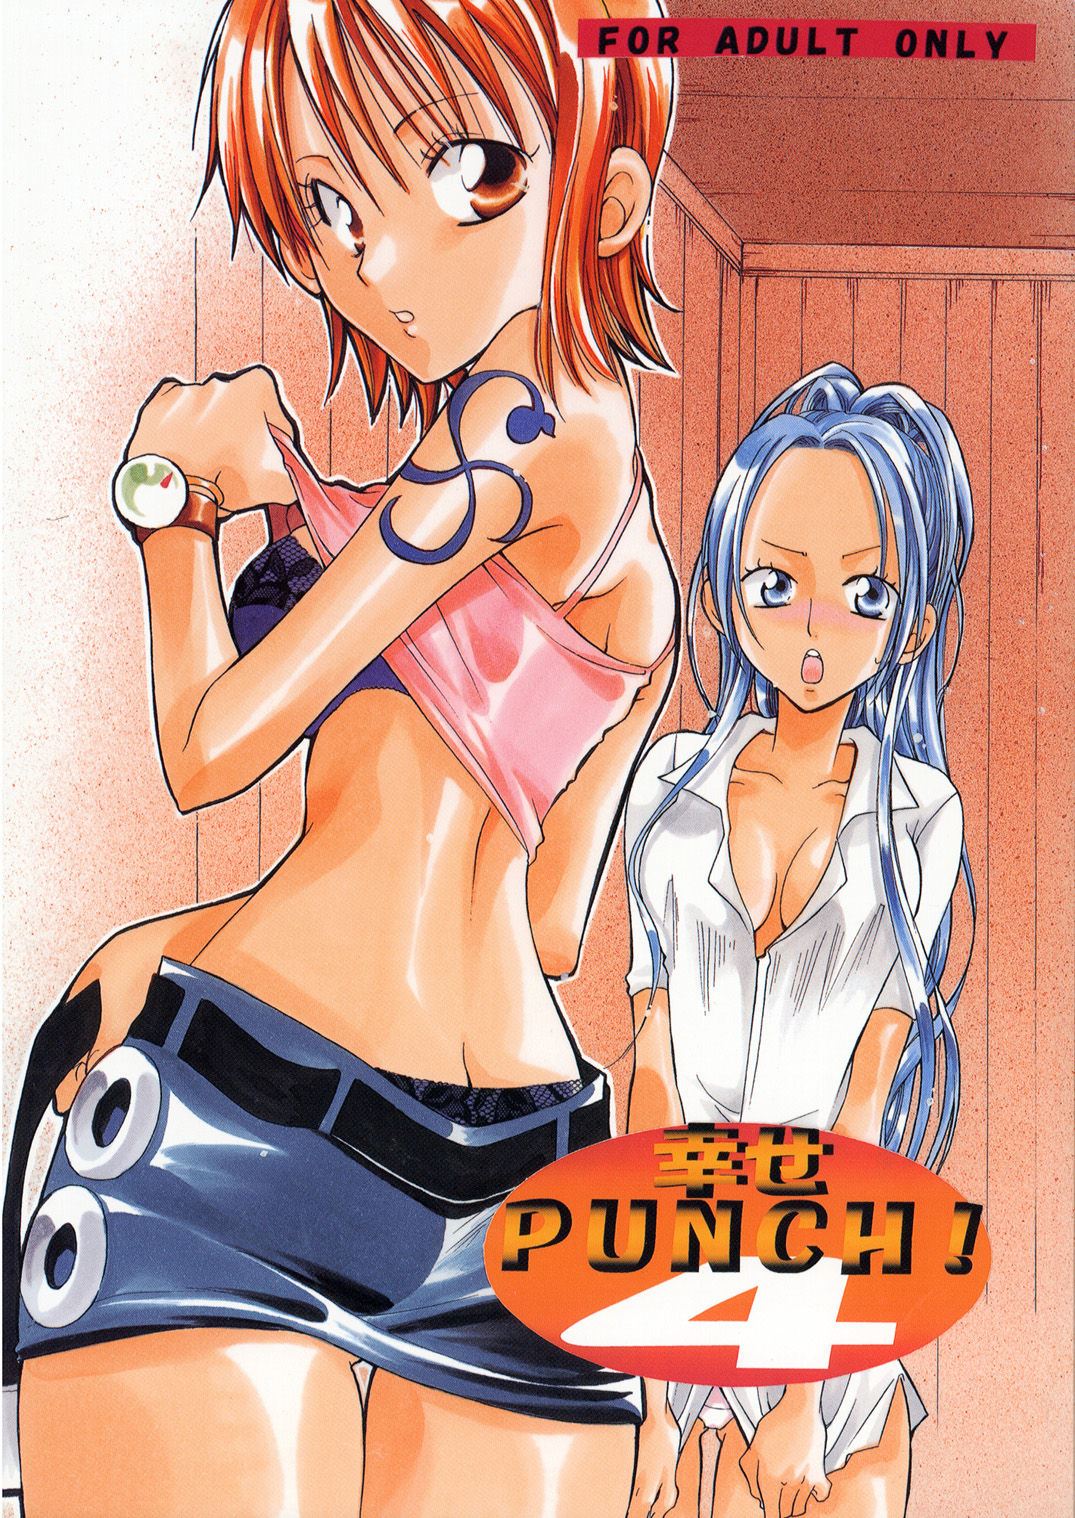 C63 KURIONE SHA YU RI Shiawase Punch 4 One Piece English EHCOVE 00